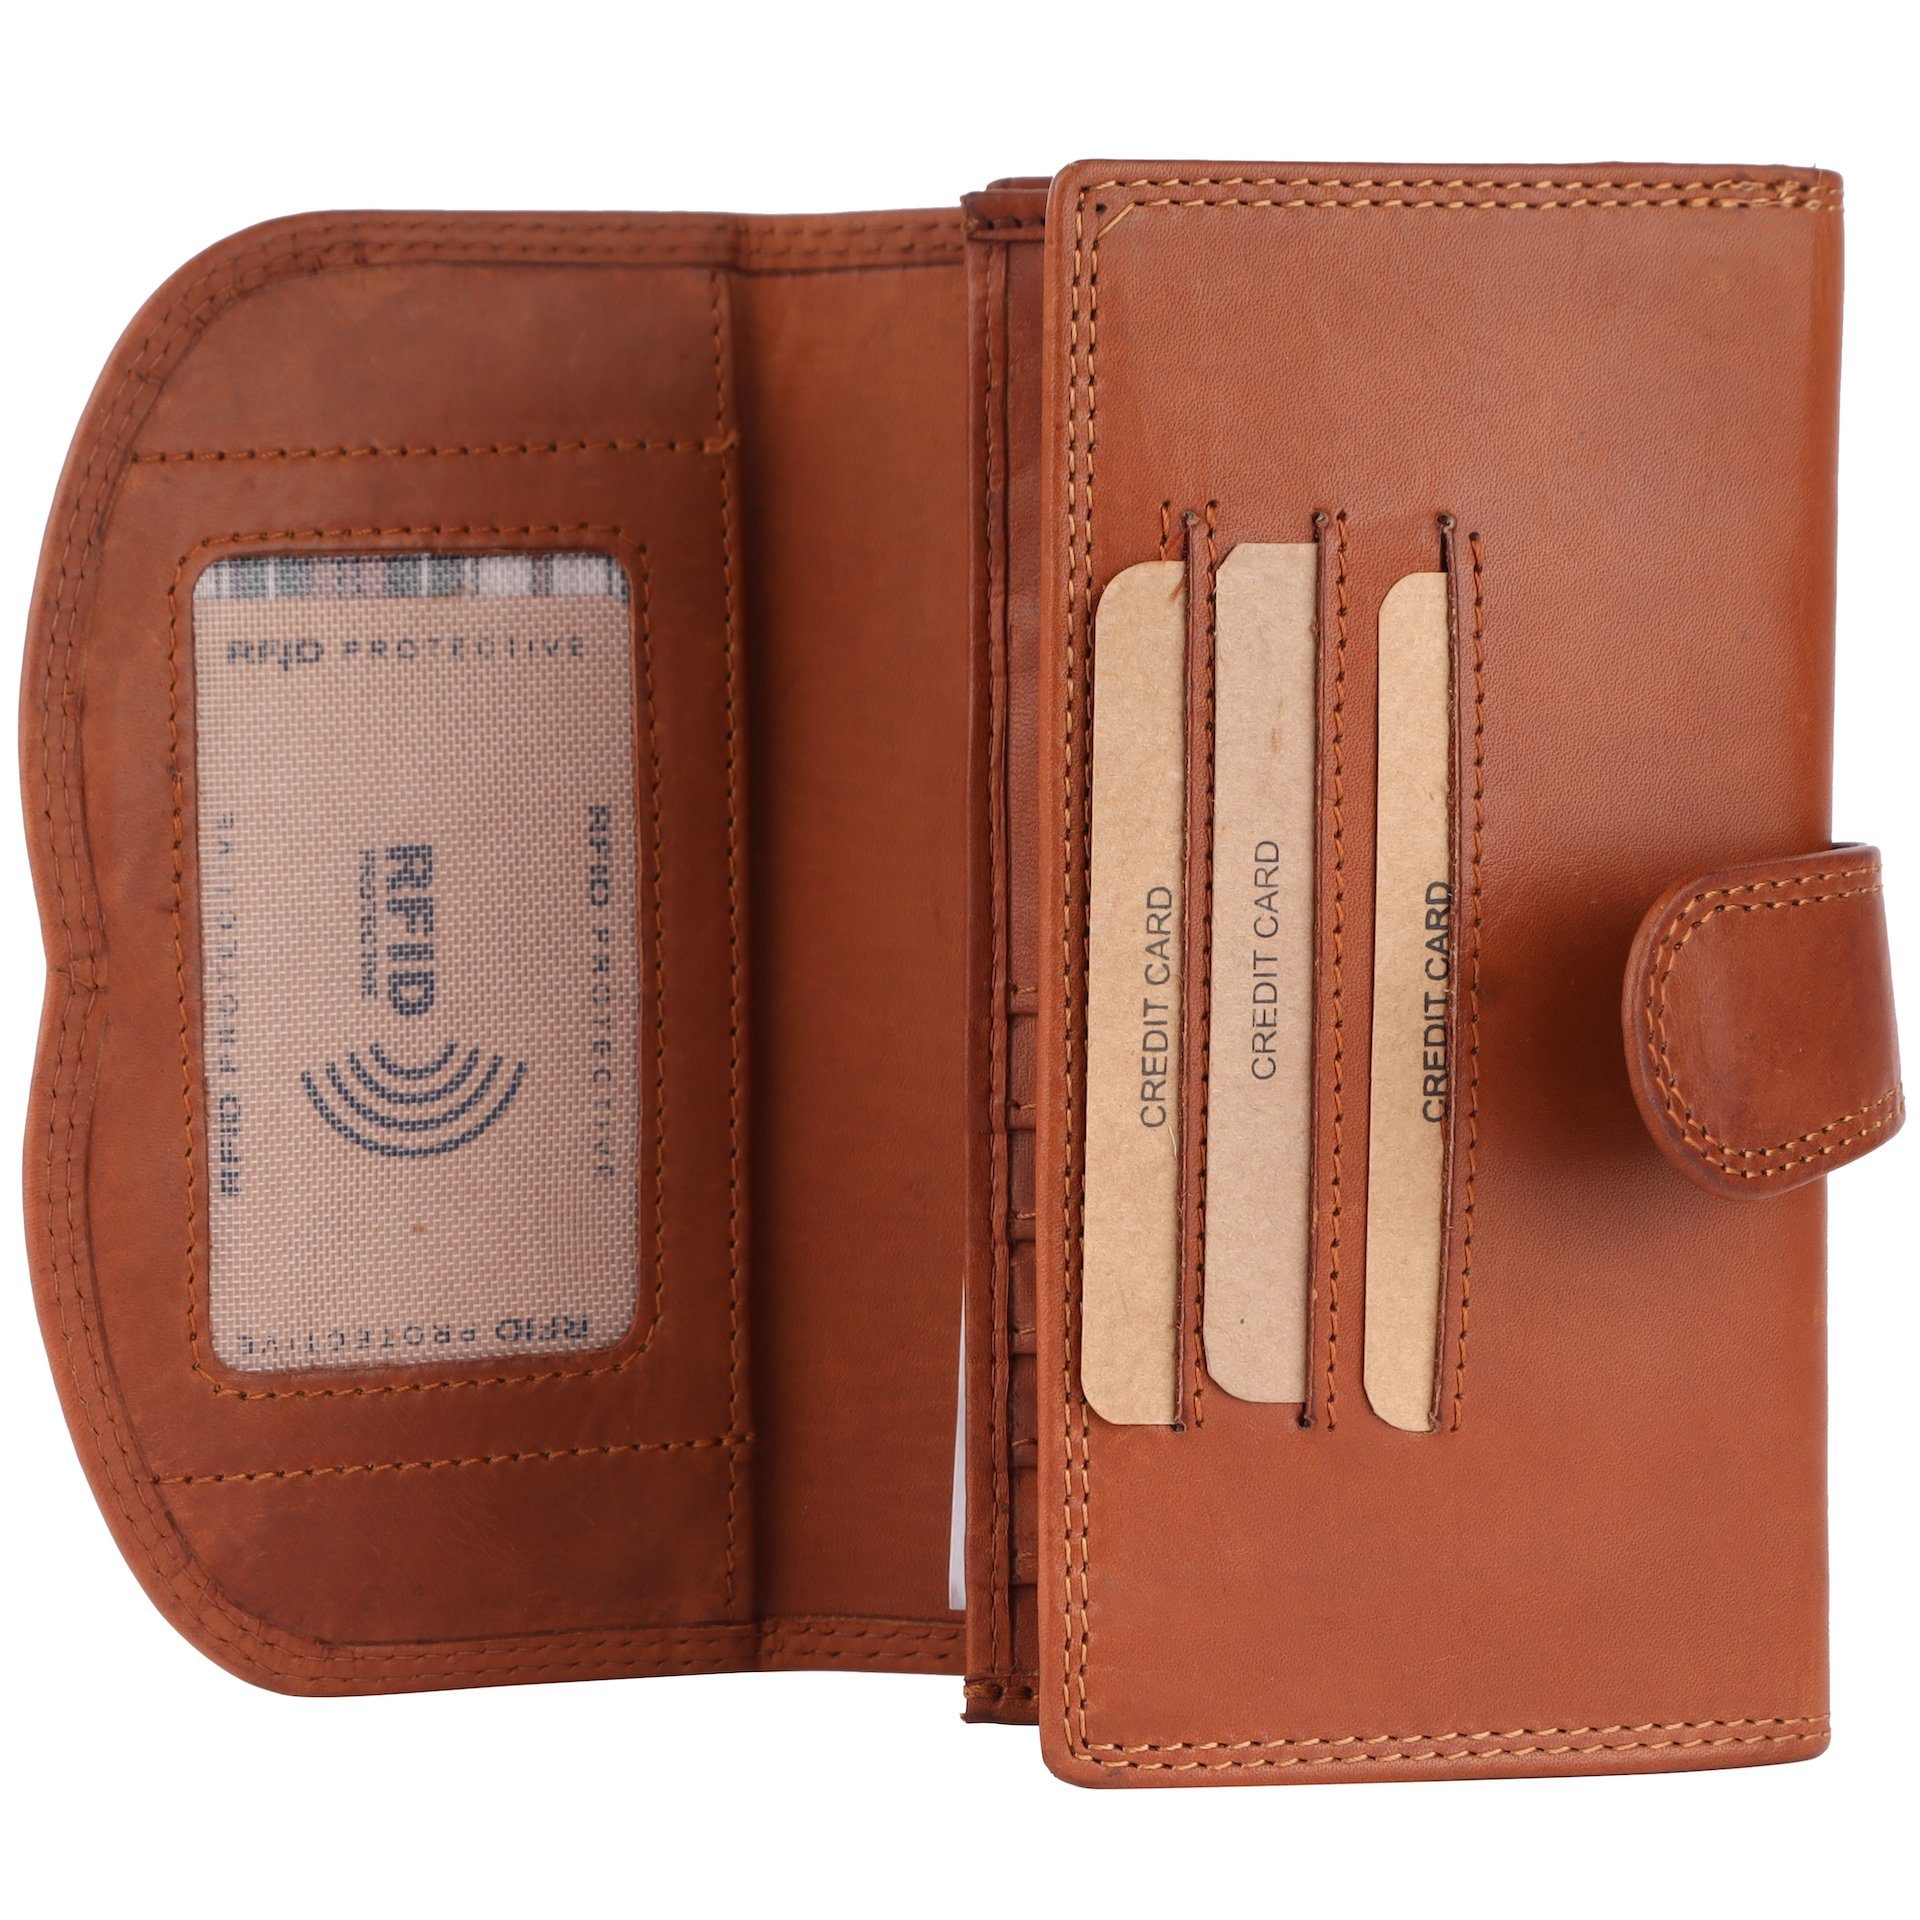 Kartenfächer Braun Vintage, Portmonee Portemonnaie RFID RFID-Schutz Kartenfächer Geldbörse Damen Benthill Echt viel Leder Münzfach Reißverschlussfach